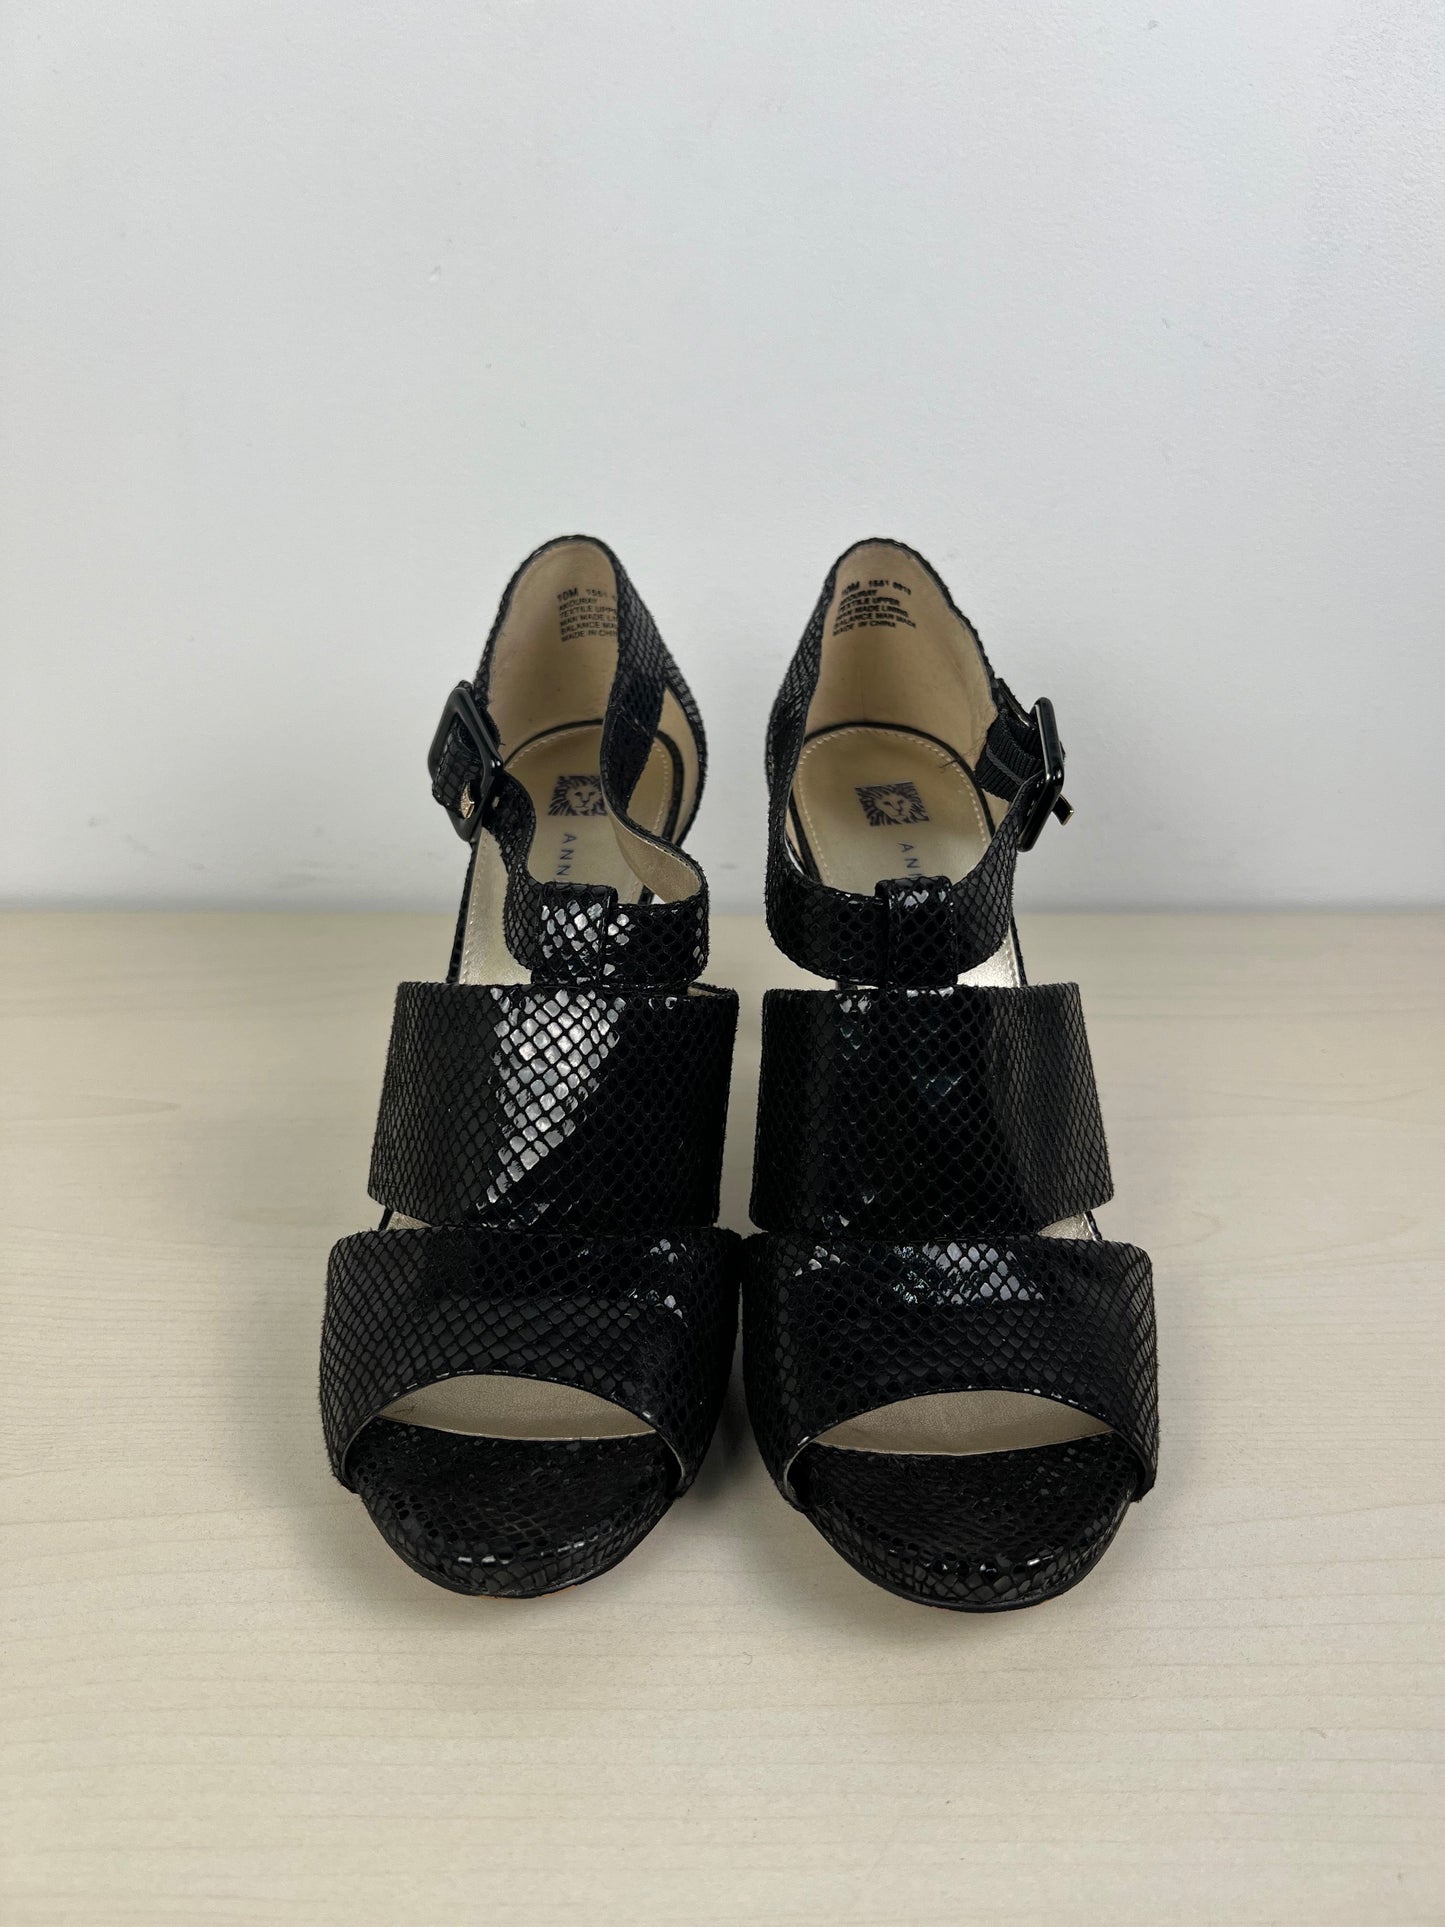 Snakeskin Print Shoes Heels Stiletto Anne Klein, Size 10